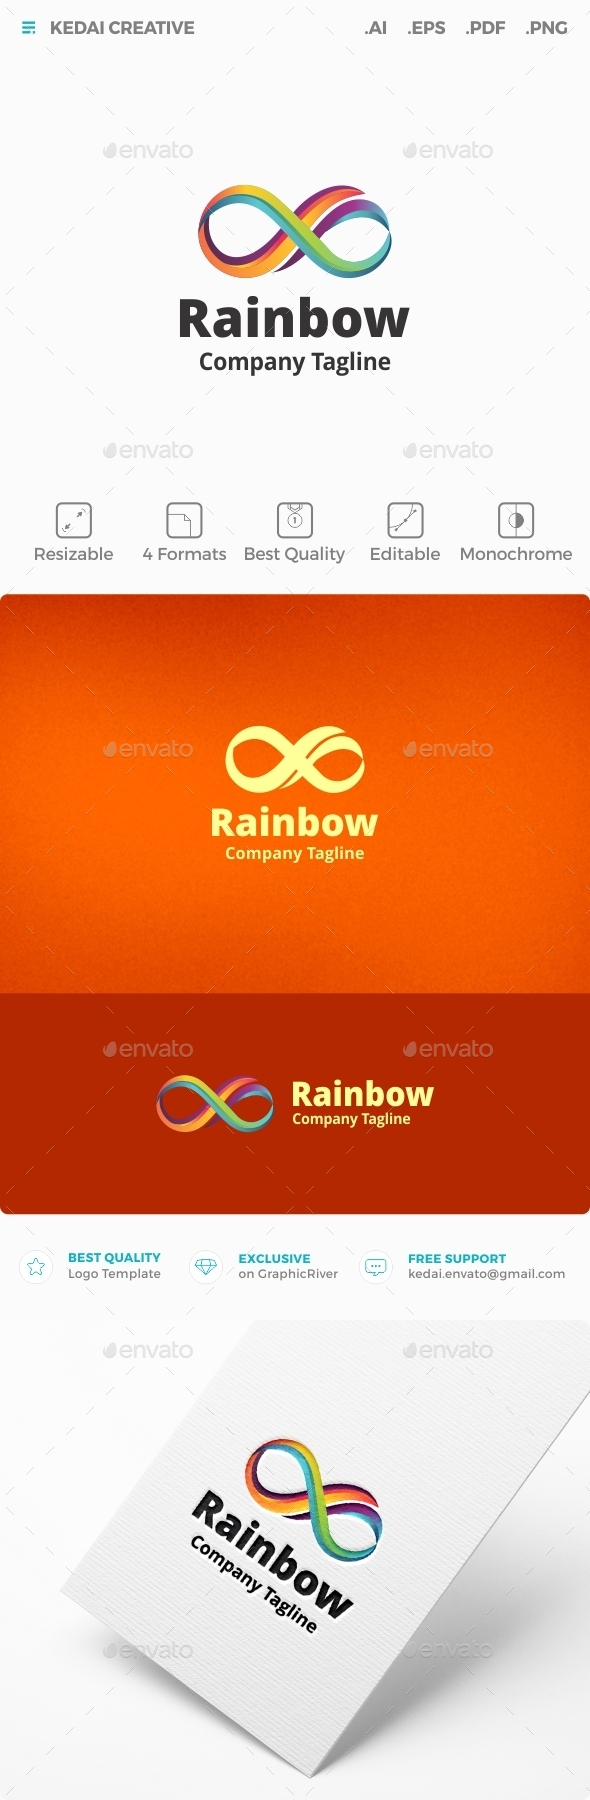 Rainbow Infinity